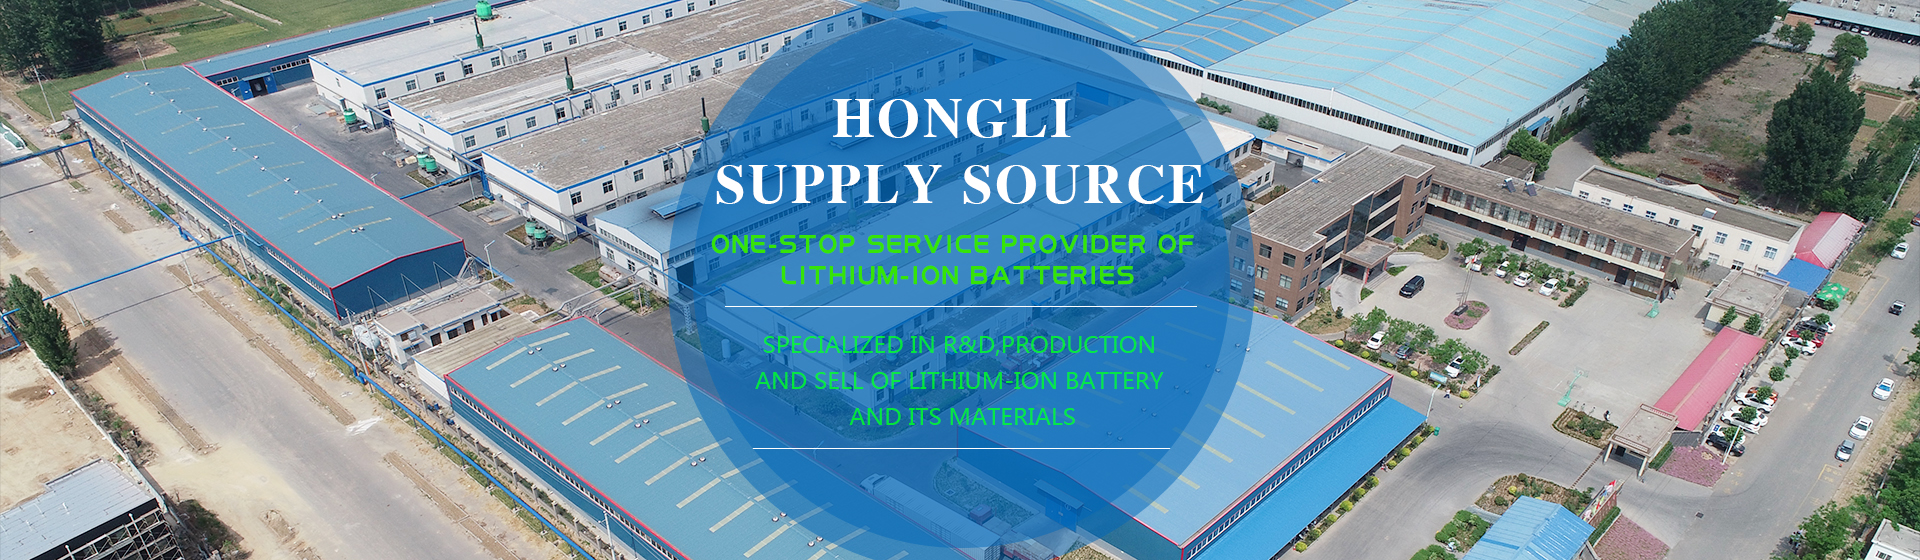 Xinxiang Hongli Supply Source Technology Co., Ltd.